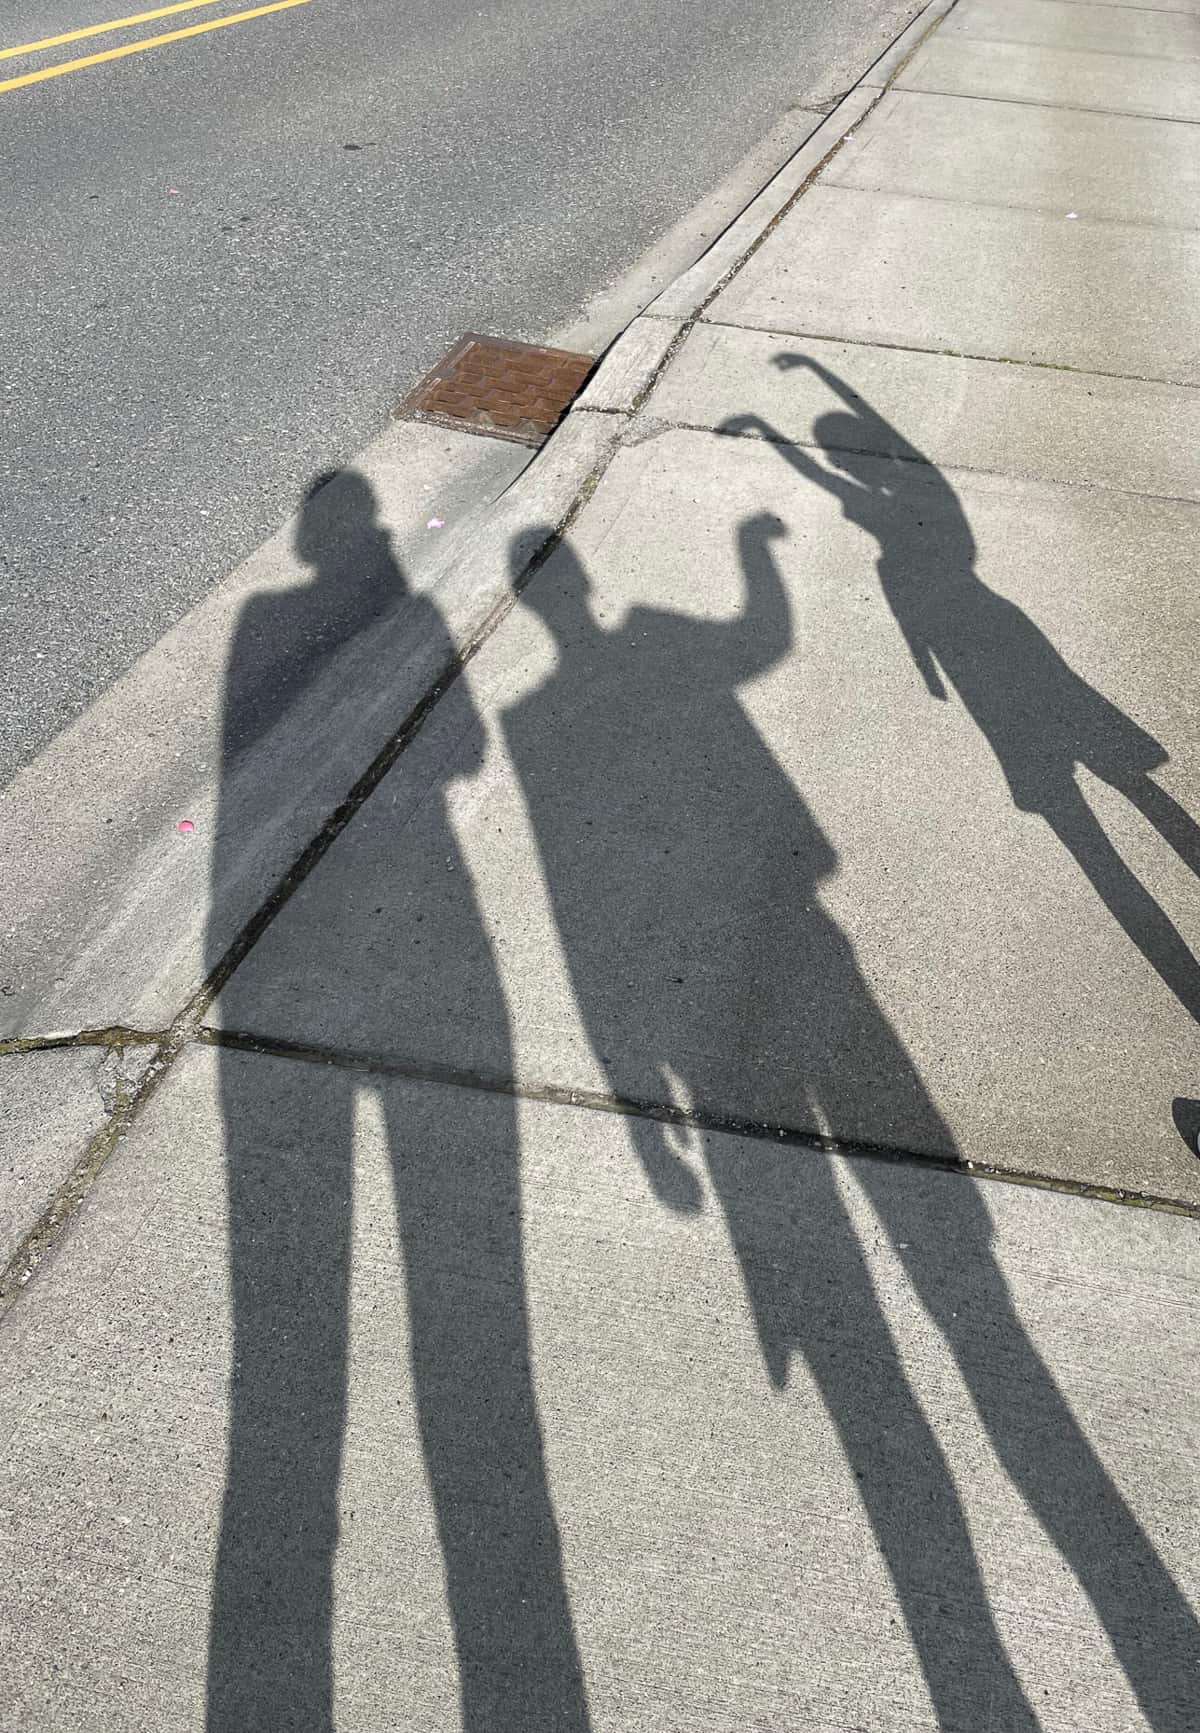 die Schatten von 3 Personen auf einem Bürgersteig.